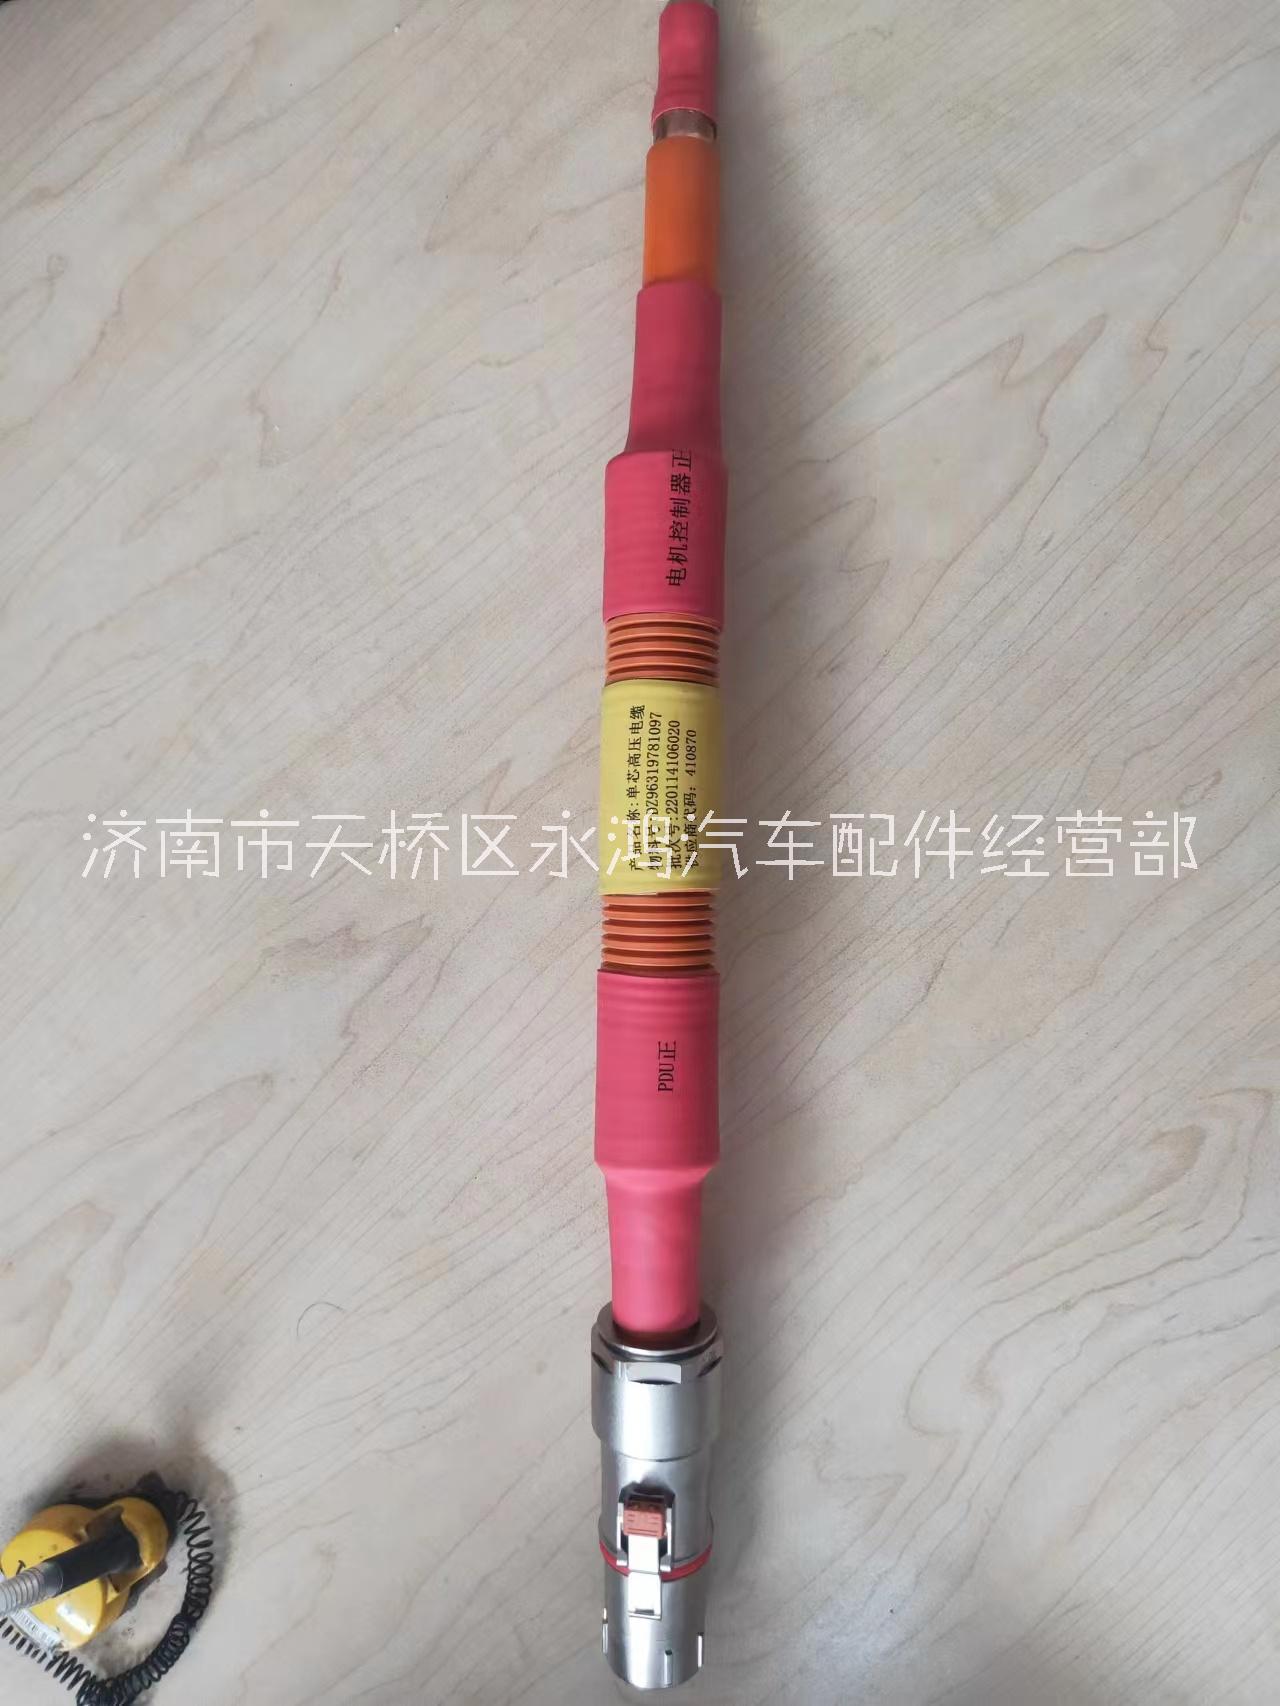 济南市新能言汽车单芯高压线缆厂家DZ96319781097 新能言汽车单芯高压线缆